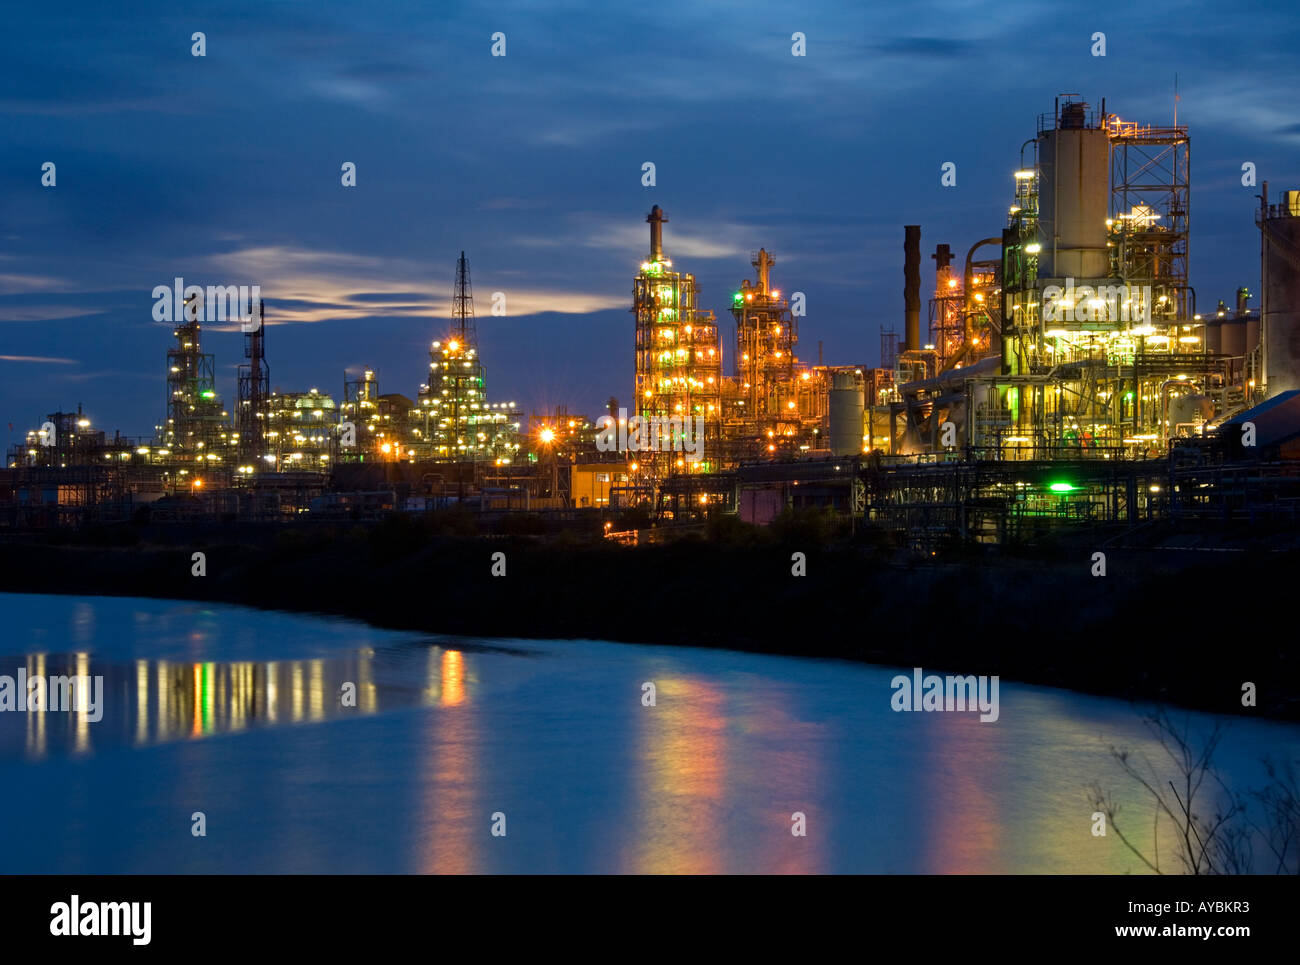 Marsh Barton Raffinerie de pétrole dans la nuit, près de Runcorn, Cheshire, England, UK Banque D'Images